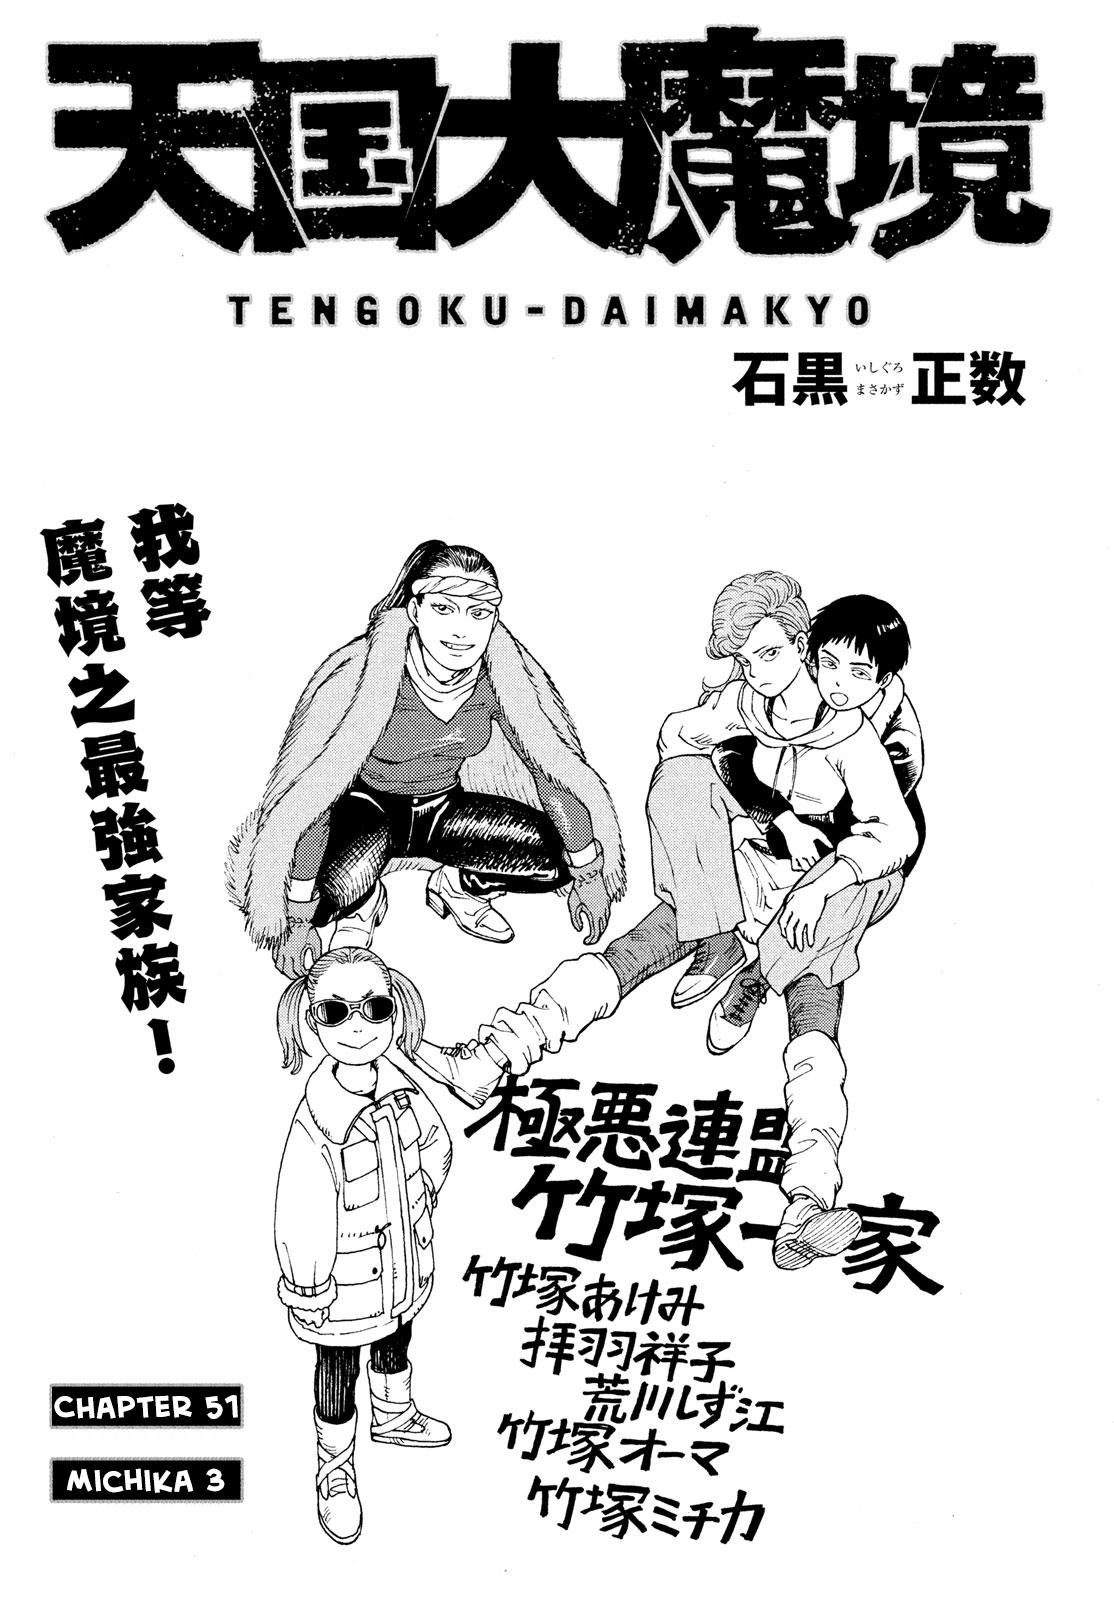 Tengoku Daimakyou Vol.9 Chapter 51: Michika ➂ page 1 - Mangakakalot